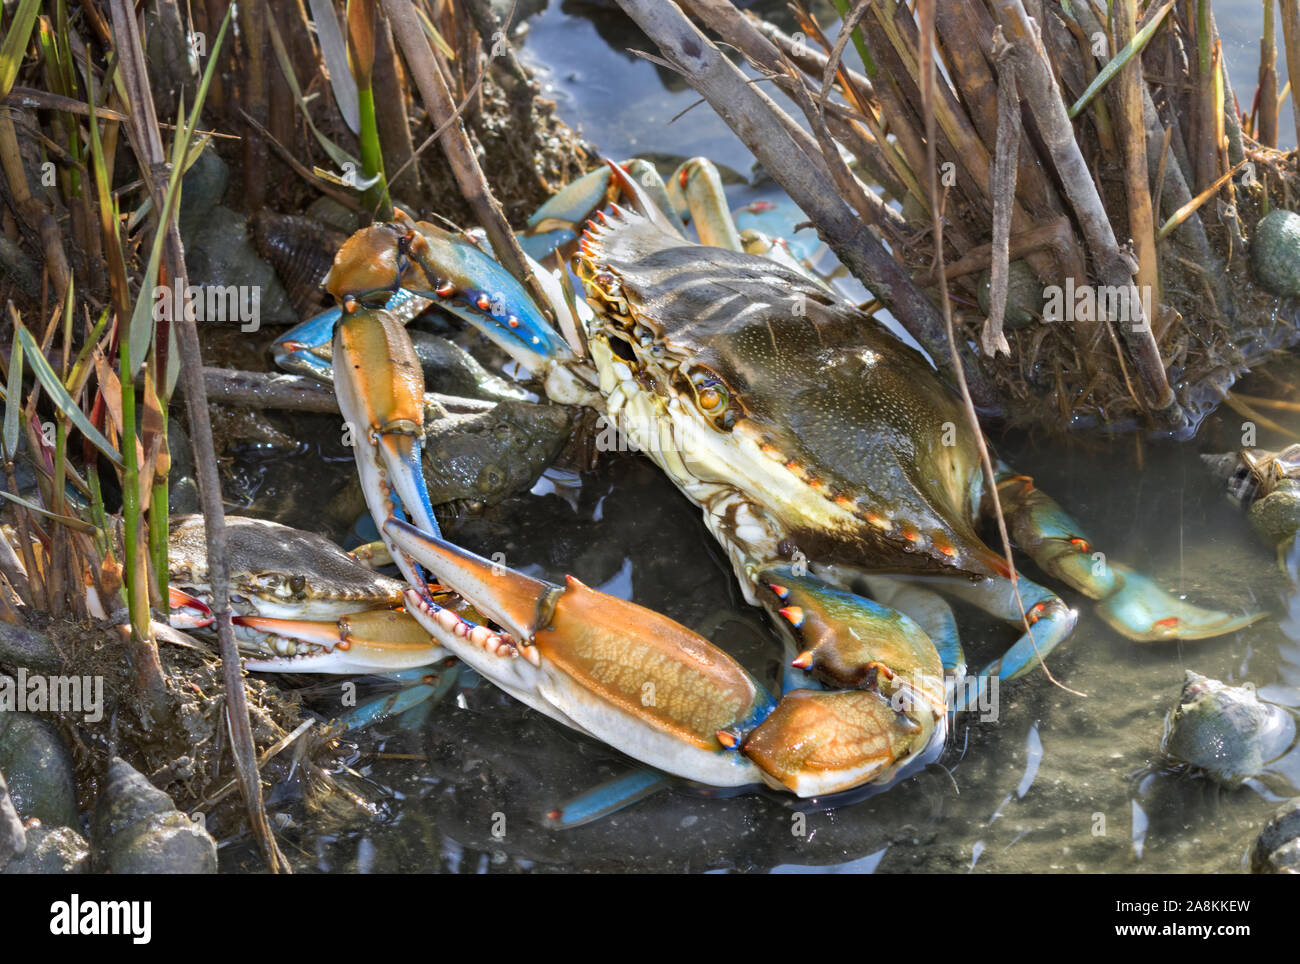 Blue crabs (Callinectes sapidus) hiding in the wetland grass, Texas, Galveston Stock Photo